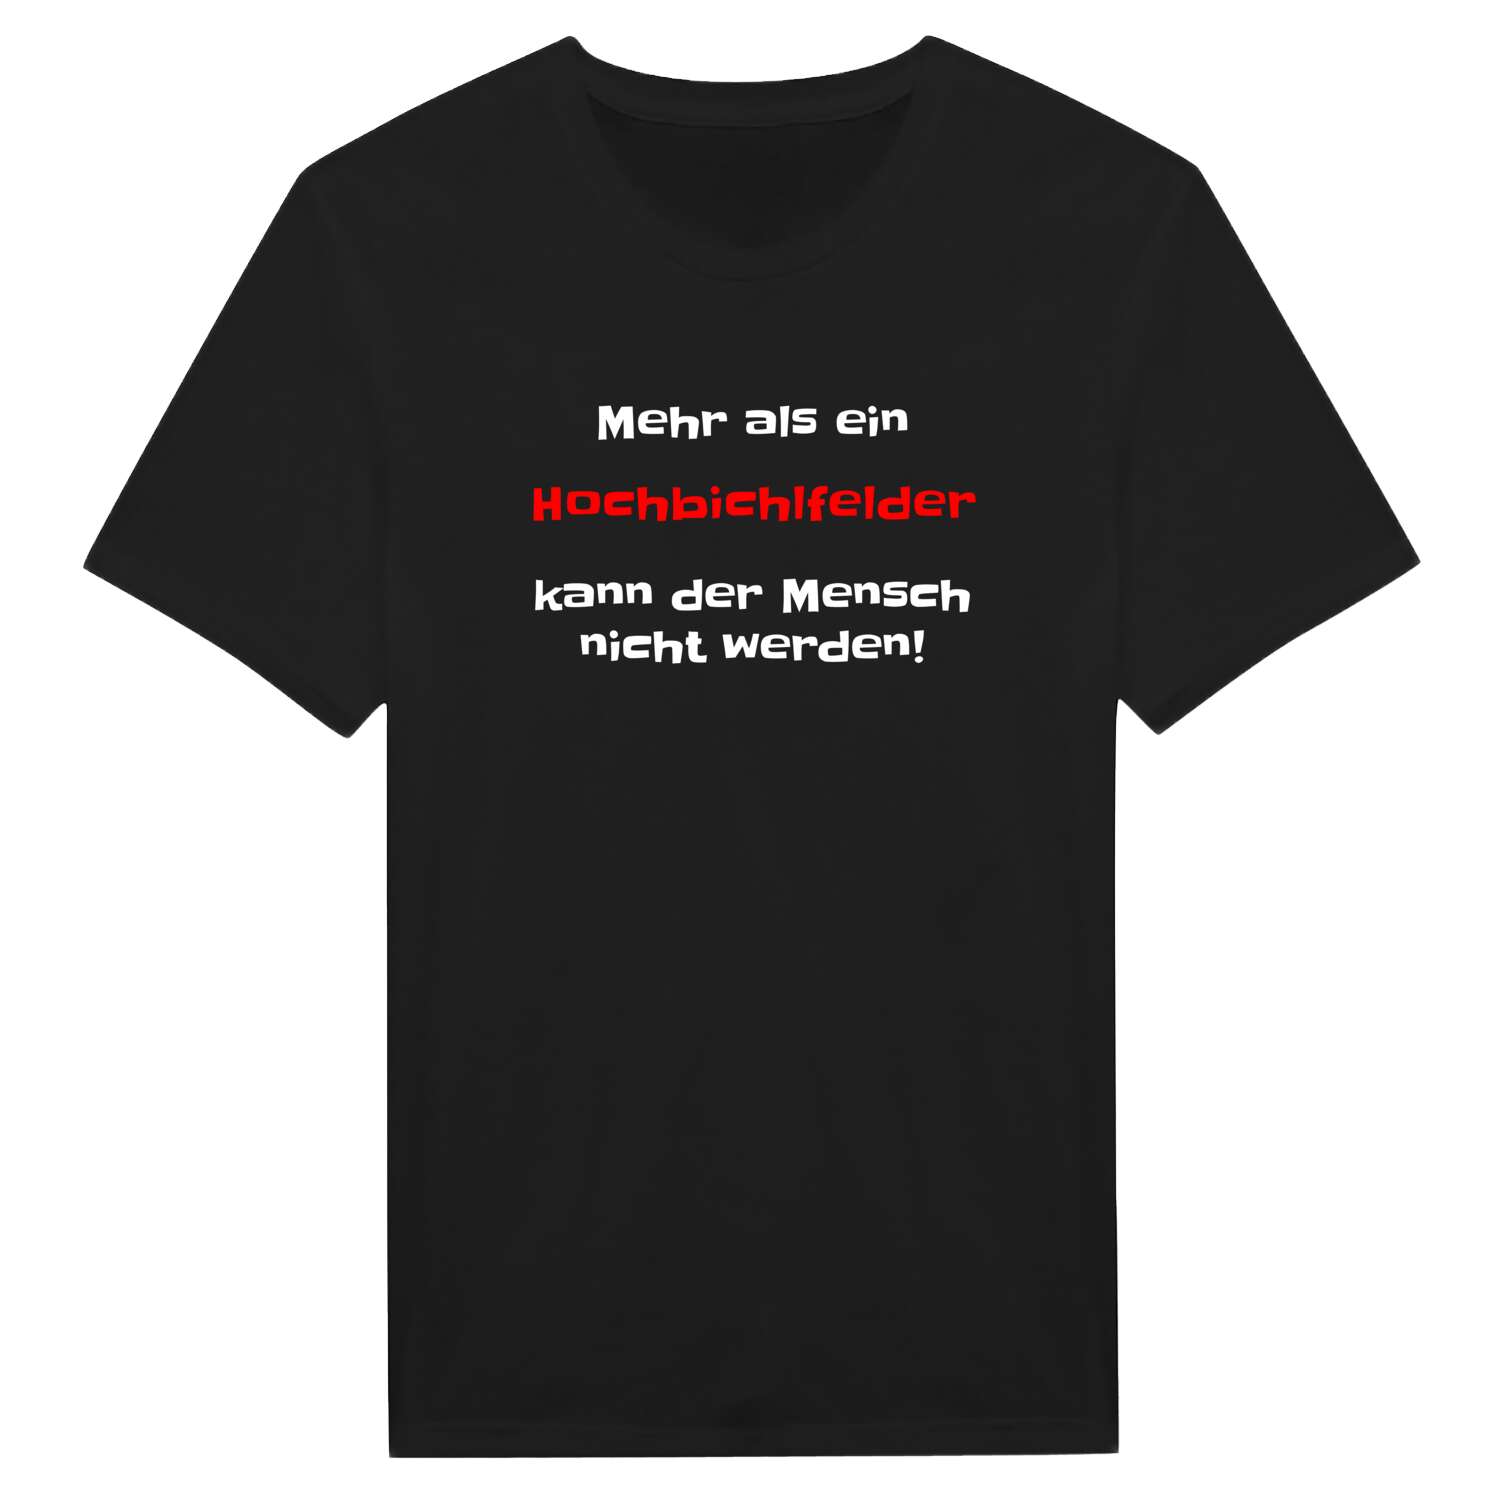 Hochbichlfeld T-Shirt »Mehr als ein«